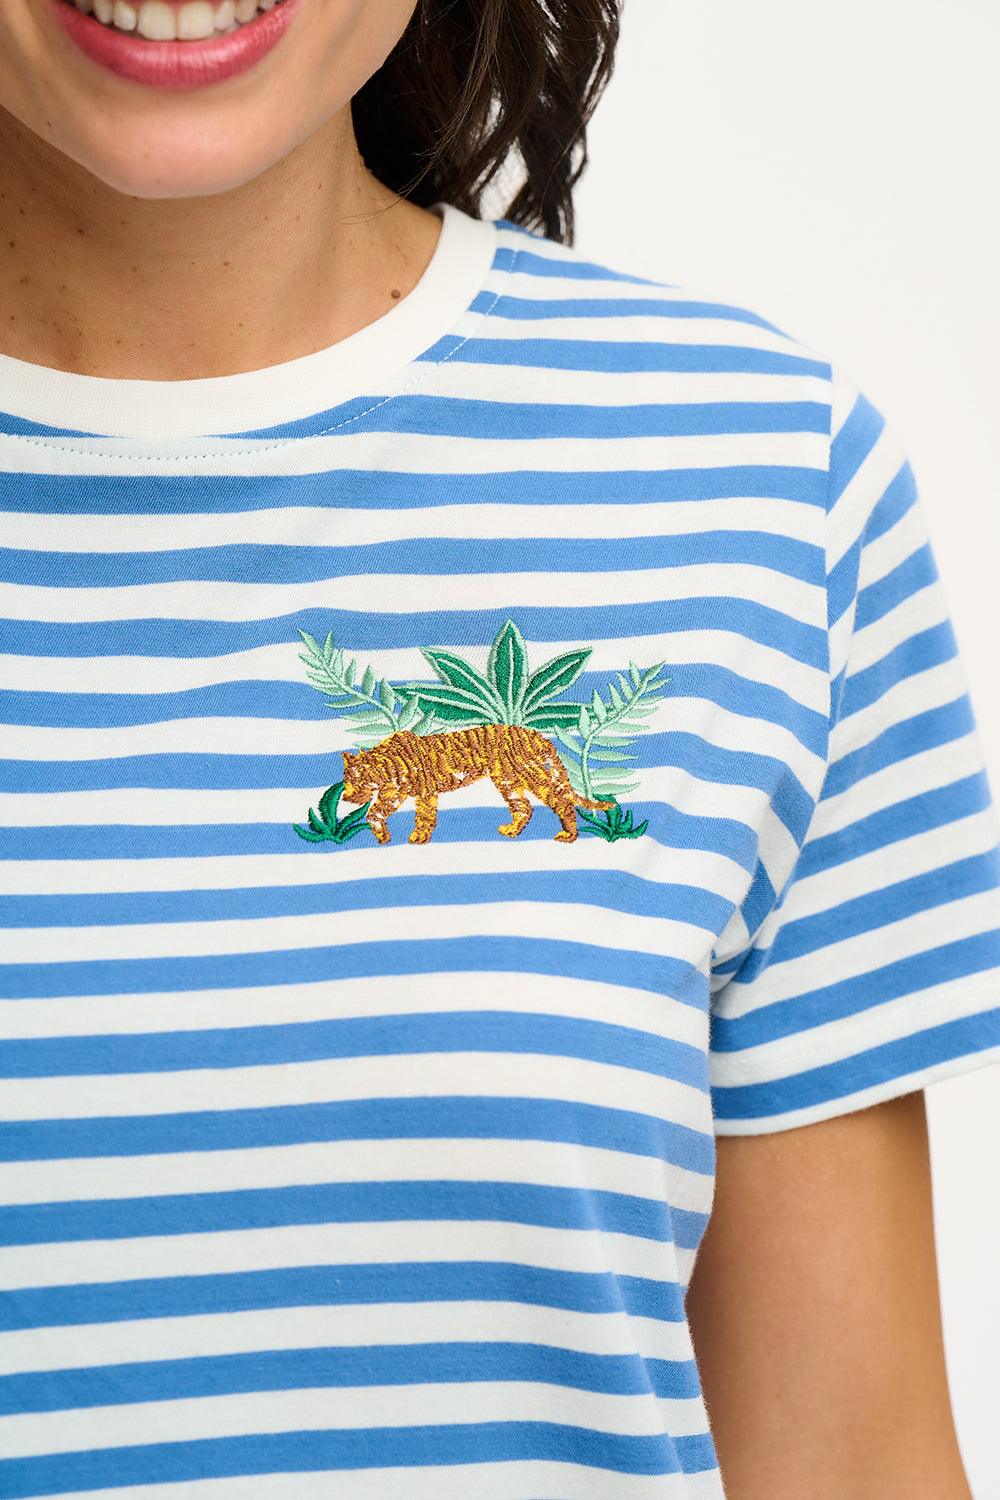 Camiseta Sugarhill Maggie Blue White Tiger Embroidery - ECRU